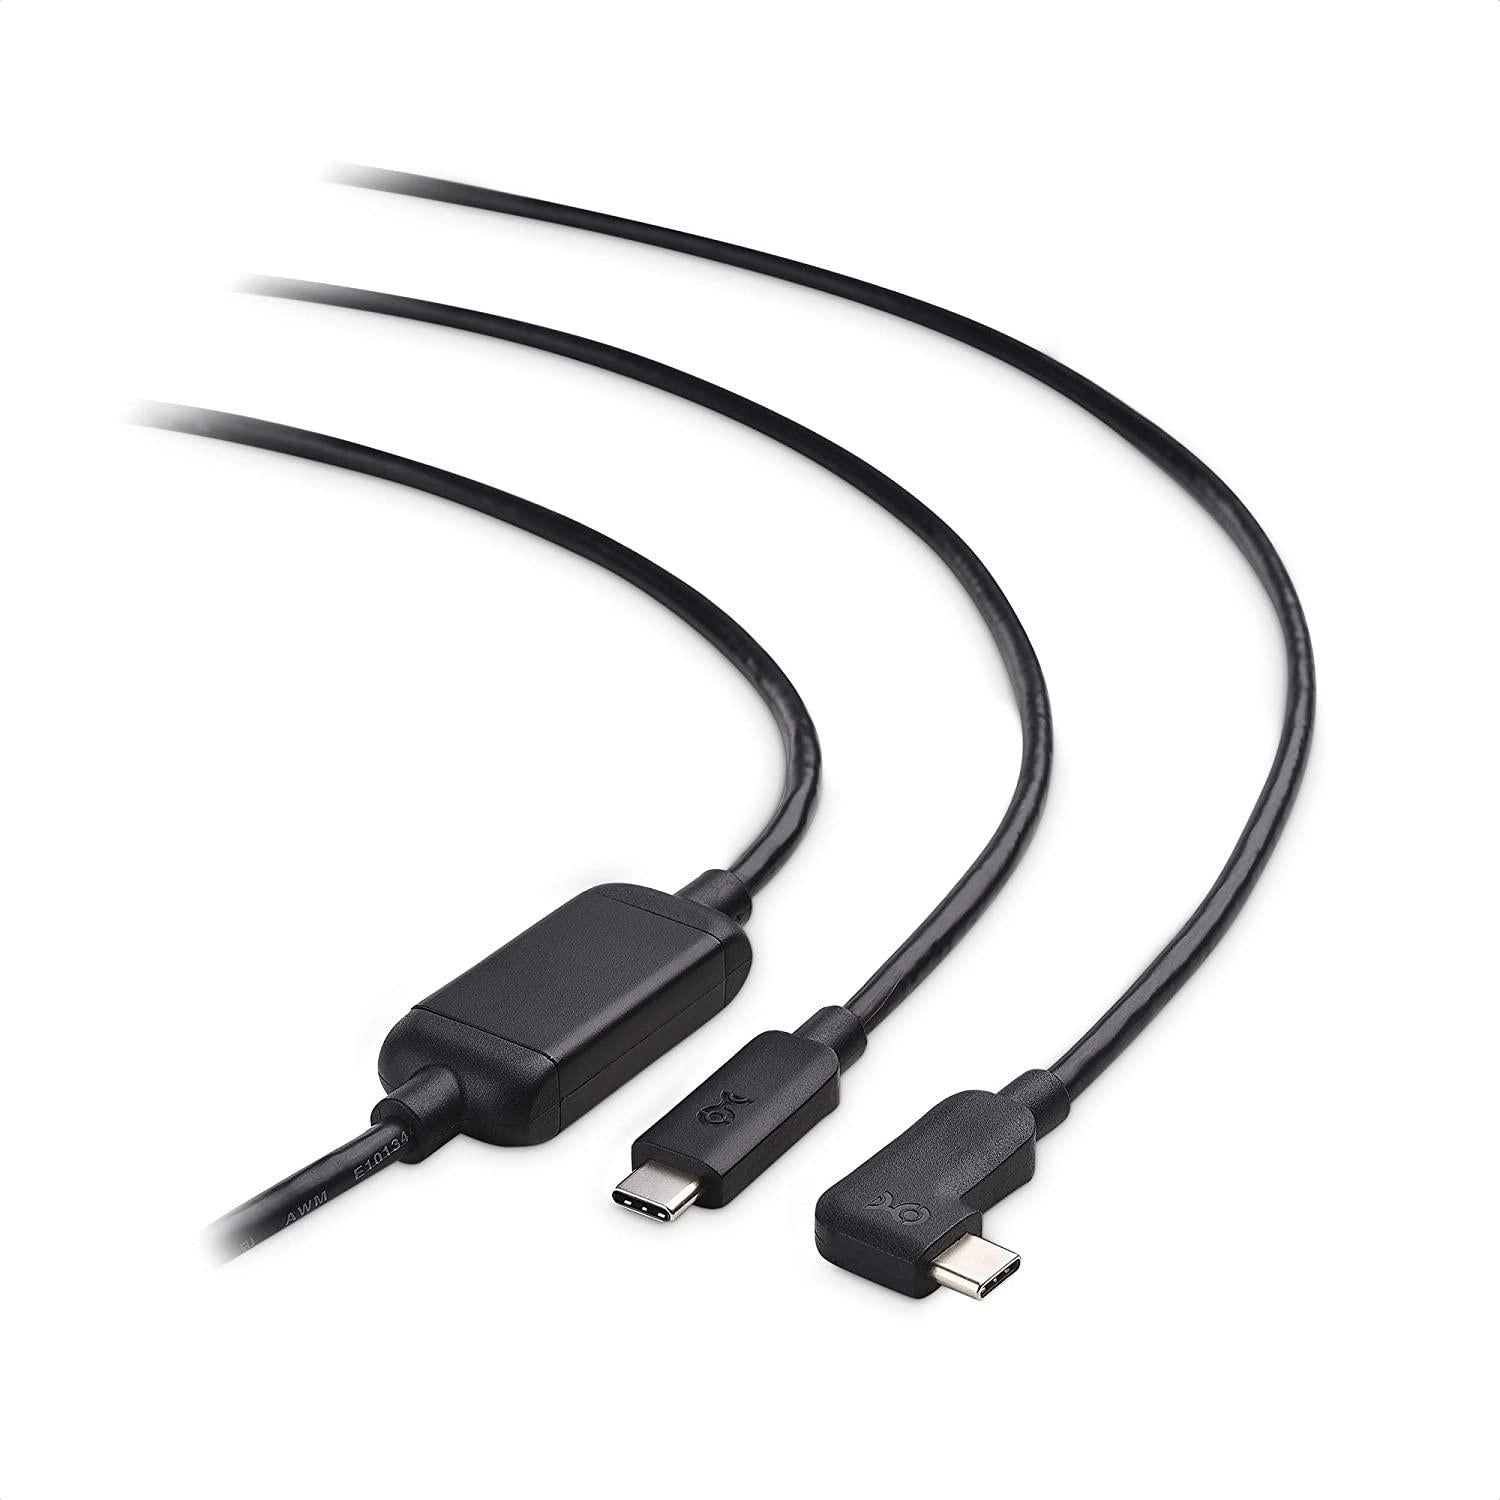 Cable Matters aktiivinen 5 m USB-C–USB-C VR Link -kaapeli Oculus Quest 2 USB3.2 Gen1 5Gbps 3A Super Speed VR Link -kaapelille